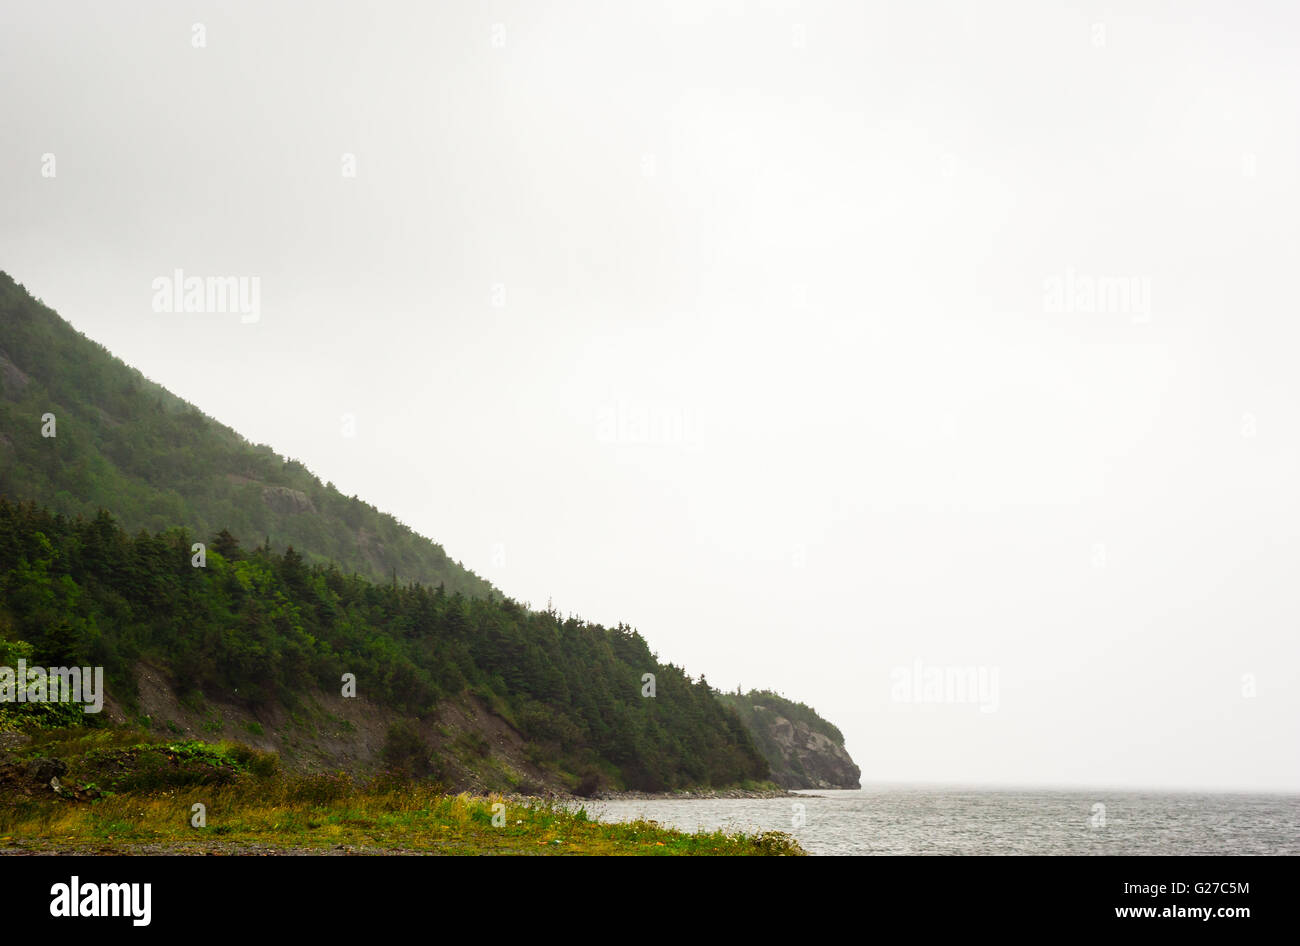 Bordure de la forêt en pente de montagne en diagonal dans l'eau contre le brouillard blanc, à Terre-Neuve, Canada. Banque D'Images